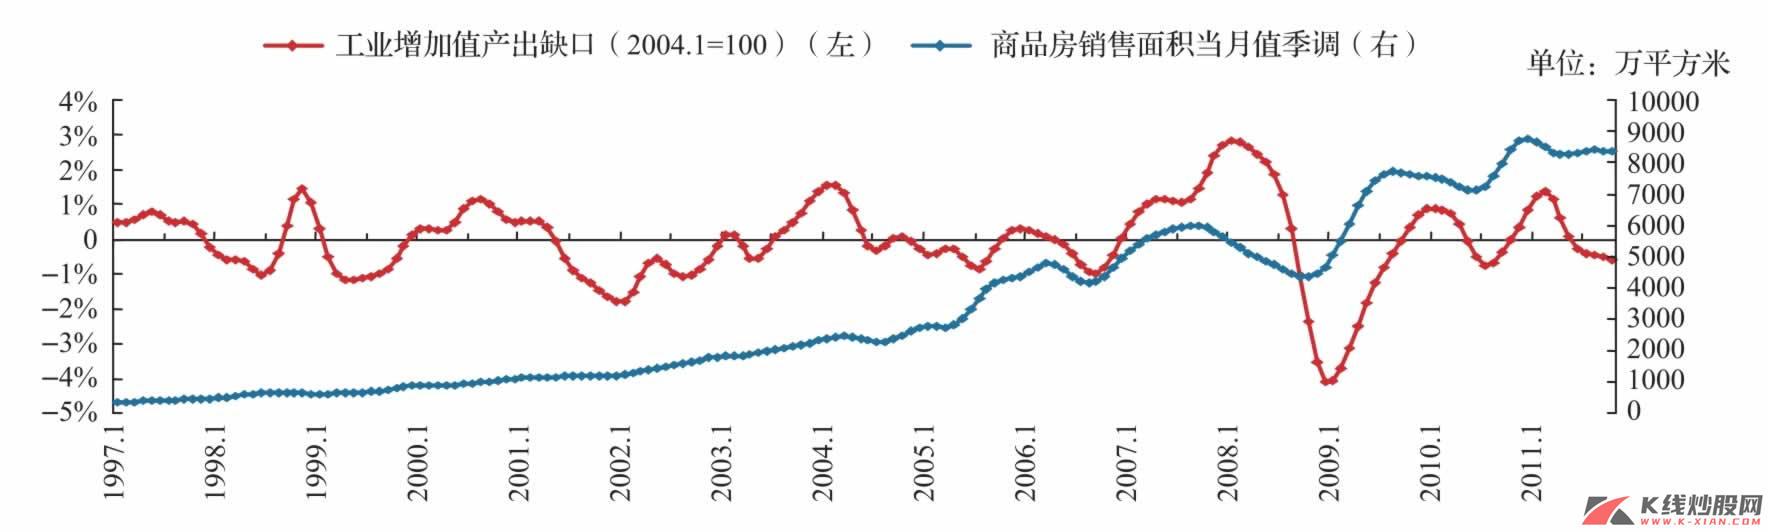 中国经济周期与房地产周期